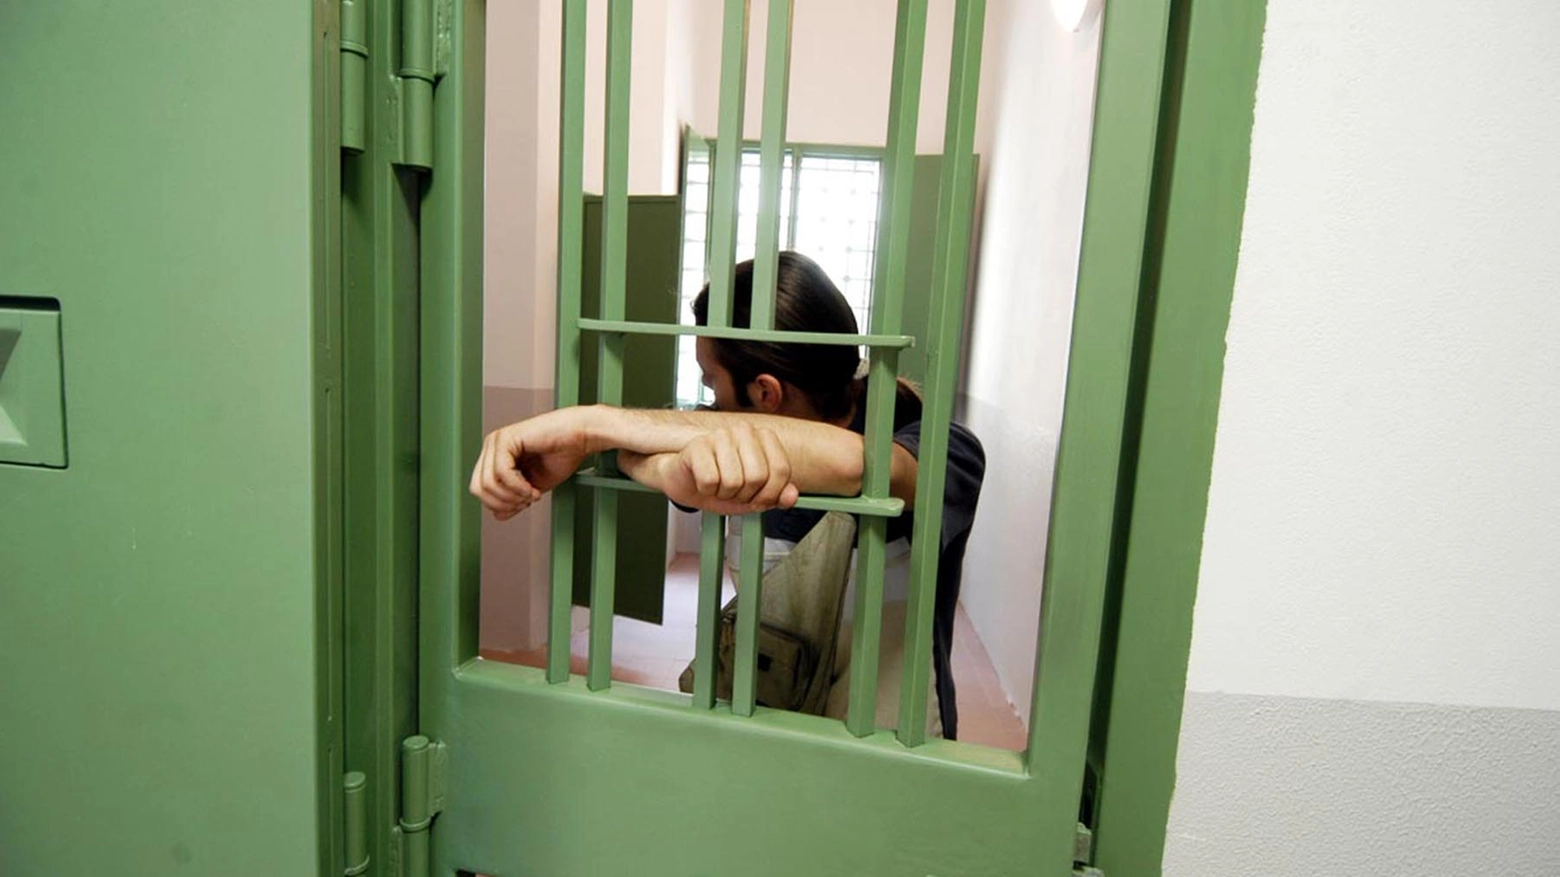 L’iniziativa promossa dall’associazione Catena in Movimento per permettere a 5 carcerati di passare la domenica lontano dalla cella